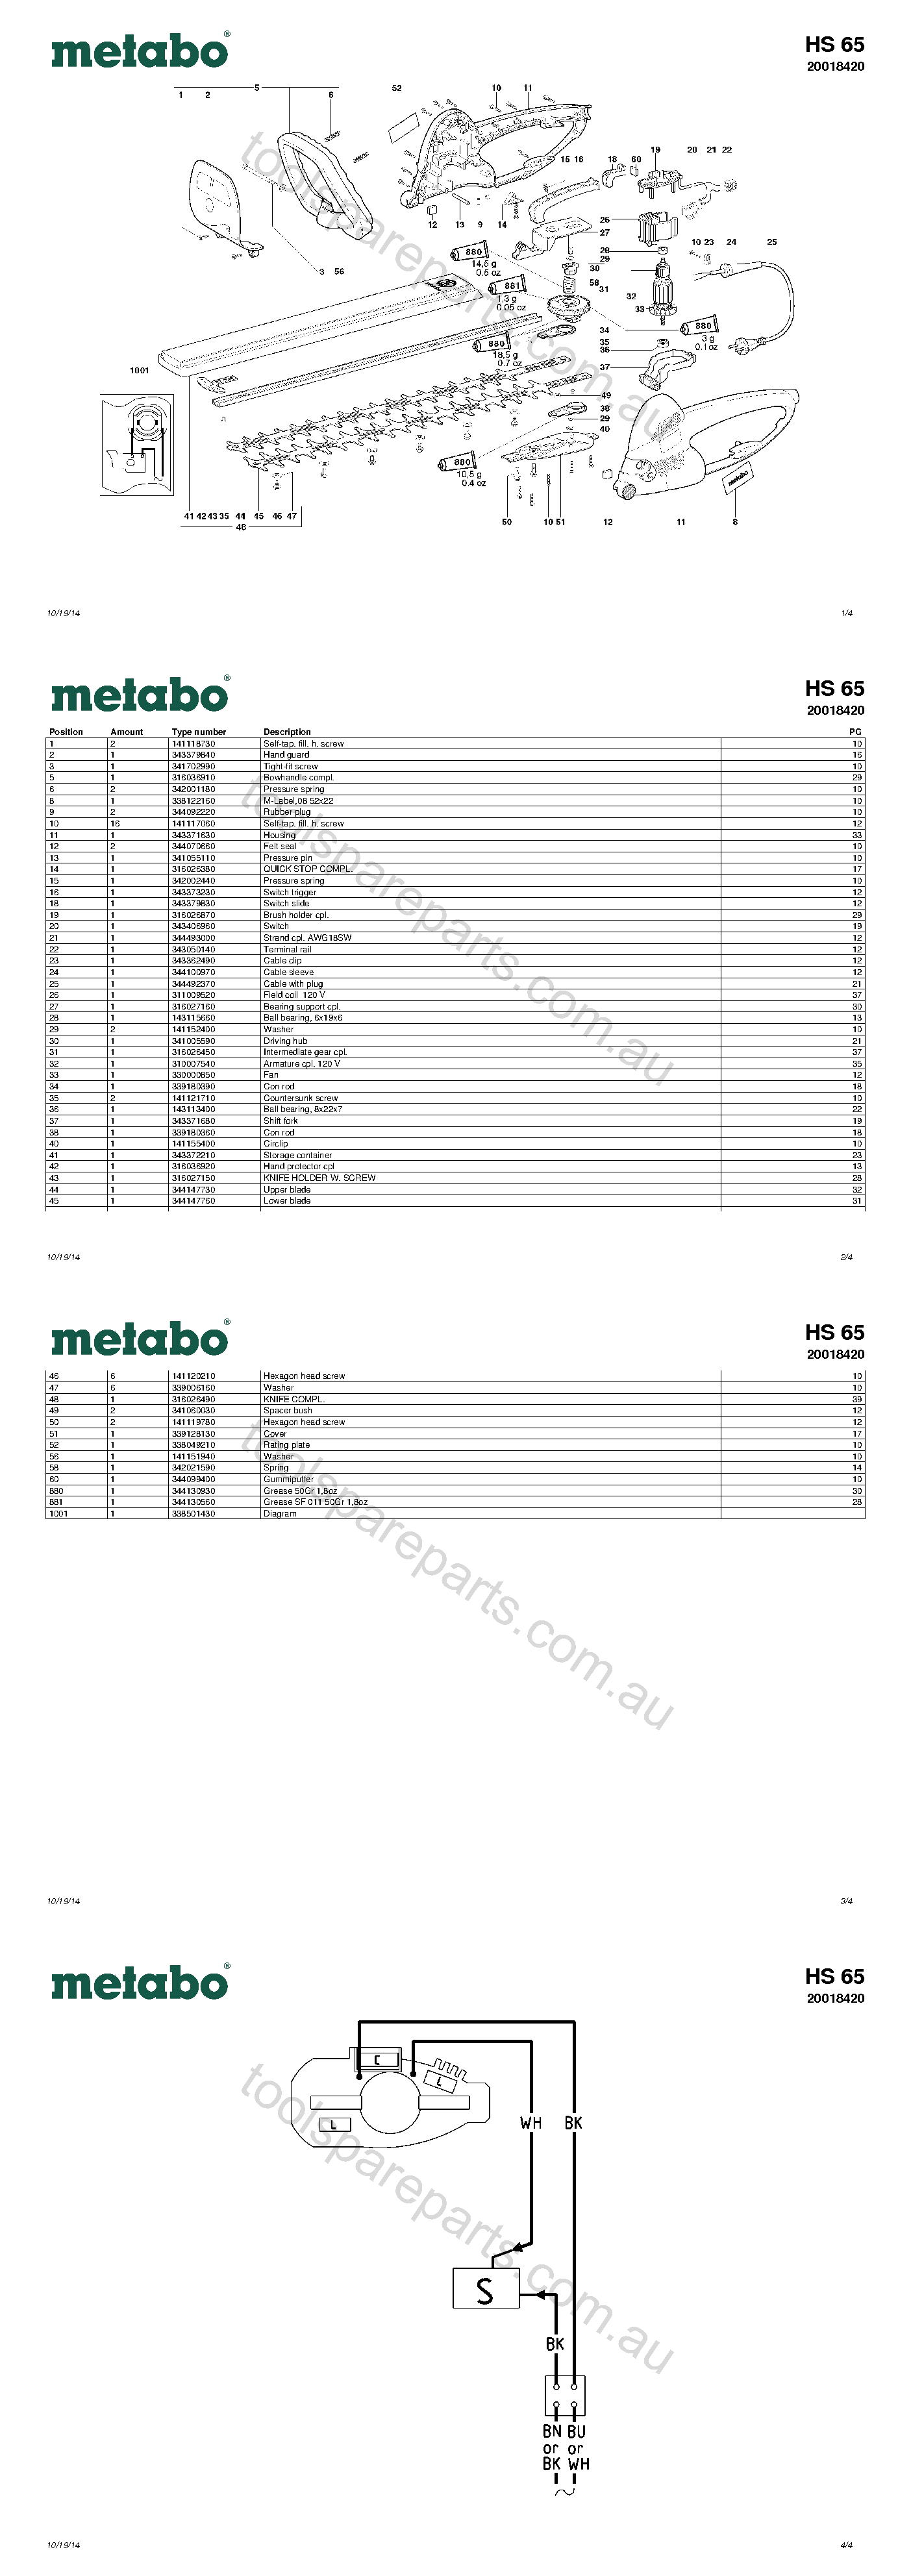 Metabo HS 65 20018420  Diagram 1